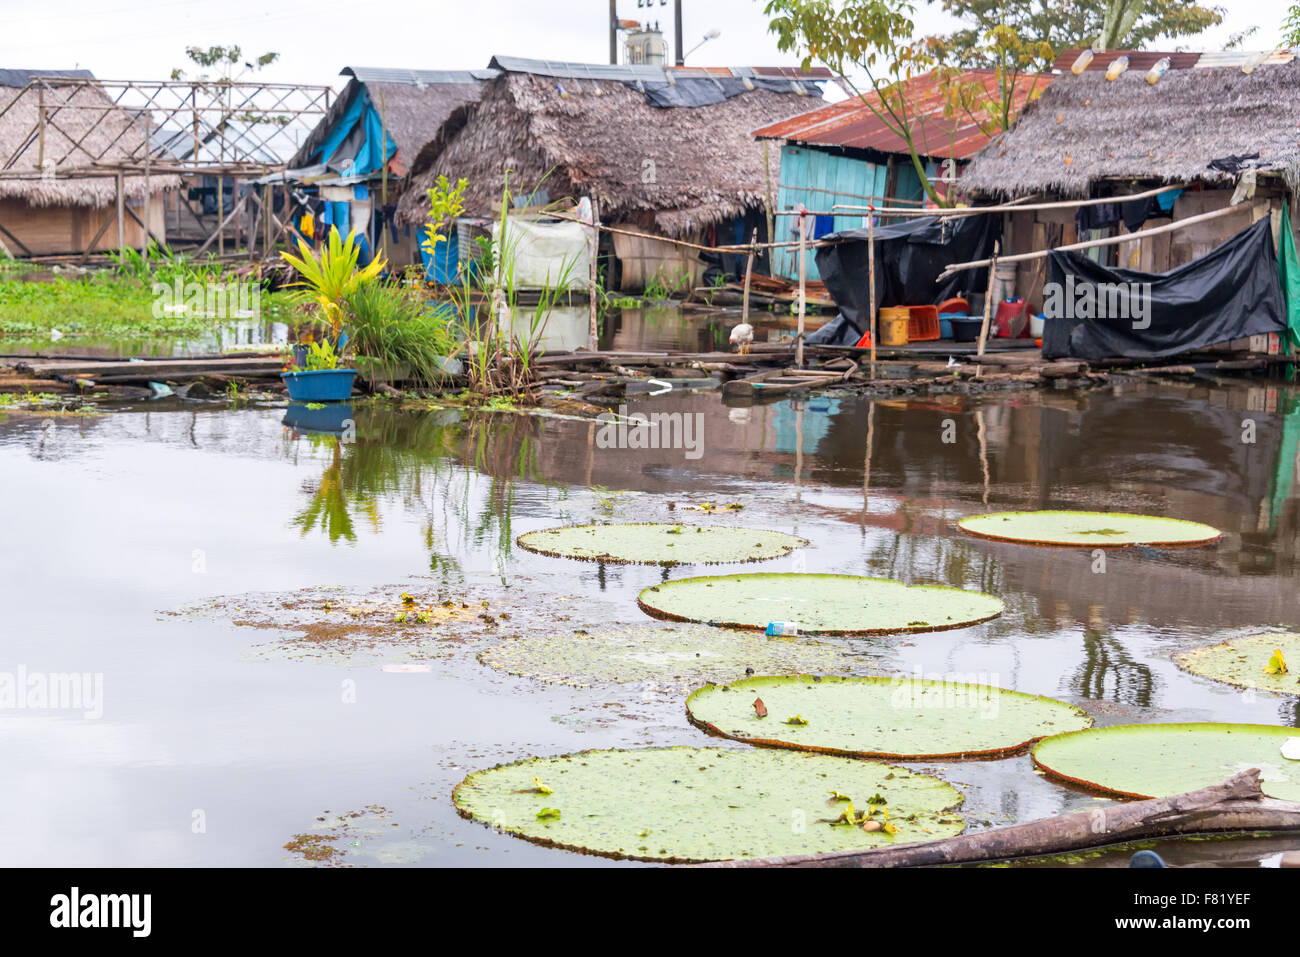 Victoria amazonica, più grande del mondo di lily pad che cresce in una baraccopoli a Iquitos, Perù Foto Stock